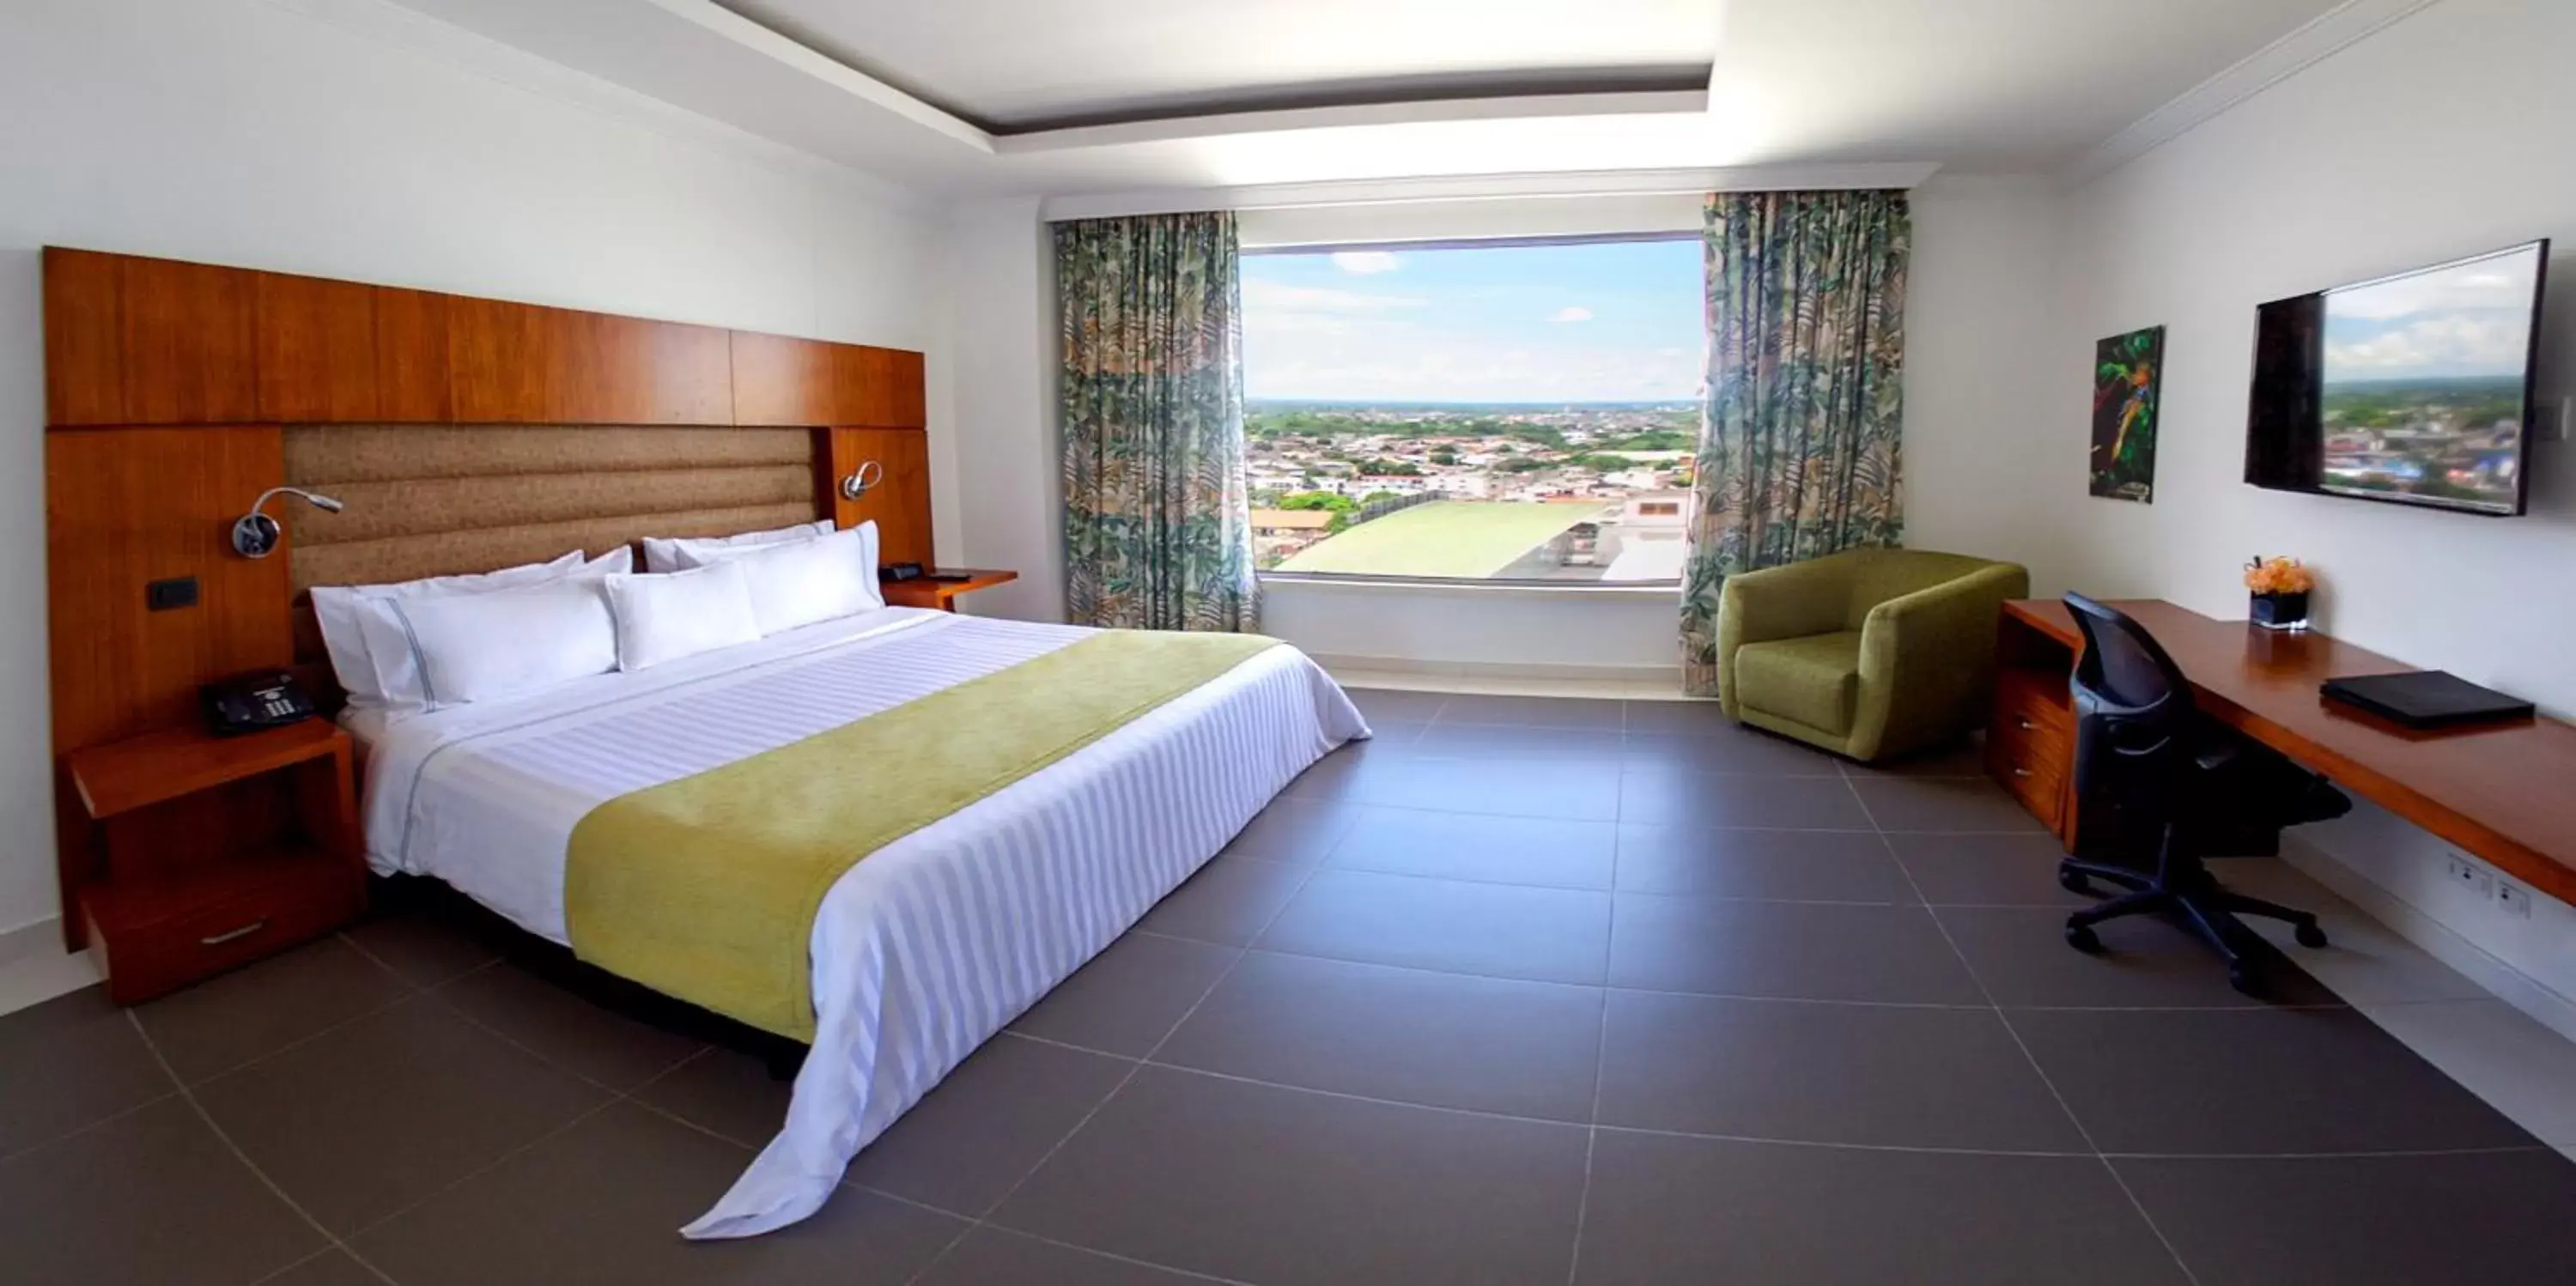 Day, Room Photo in GHL Hotel Grand Villavicencio